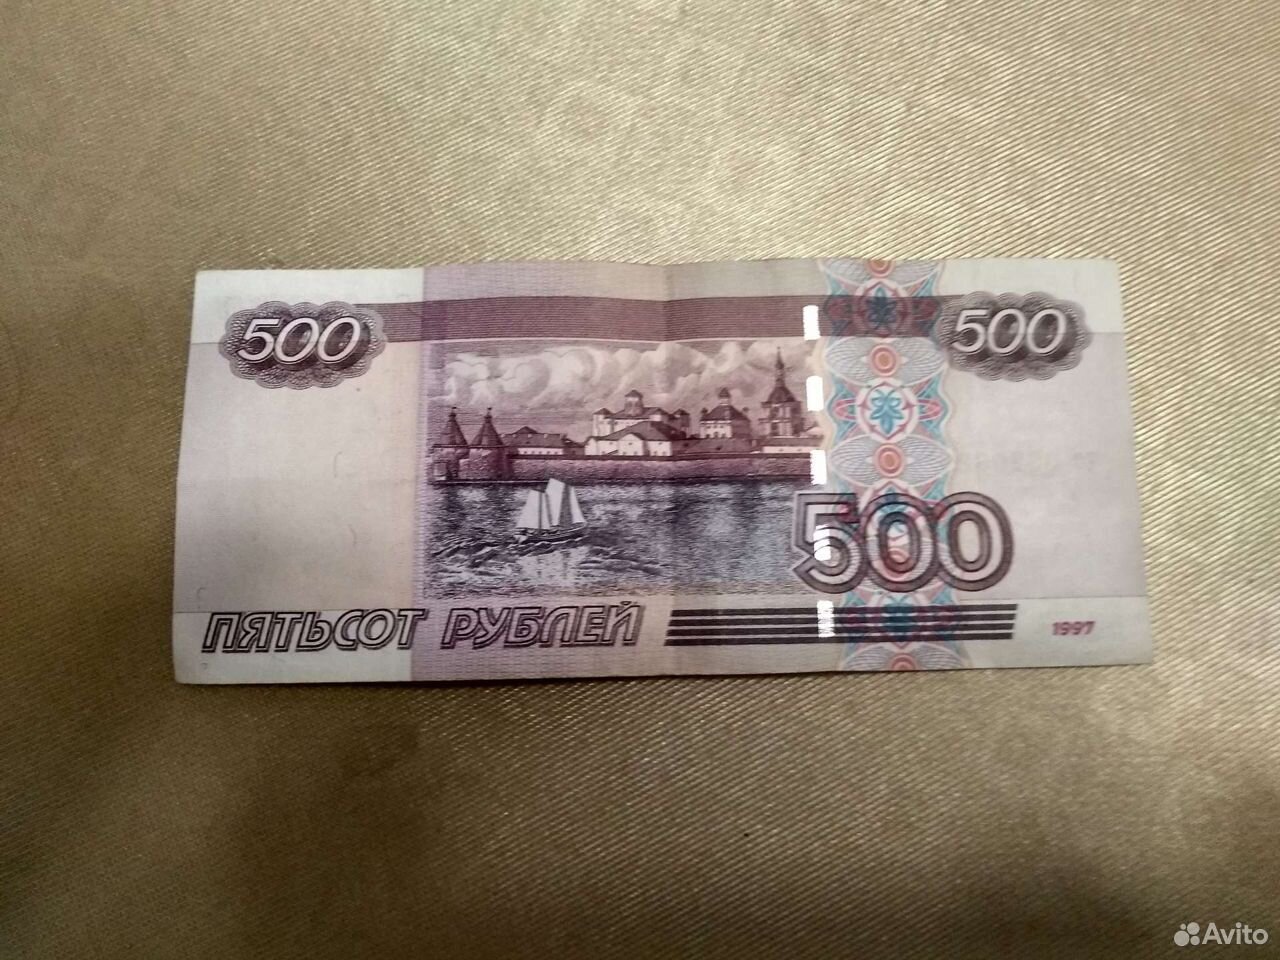 500 рублей просто. Купюра 500 рублей. 500 Рублей. Купюра 500 рублей 1997 года. Купюра 500 рублей 1997.